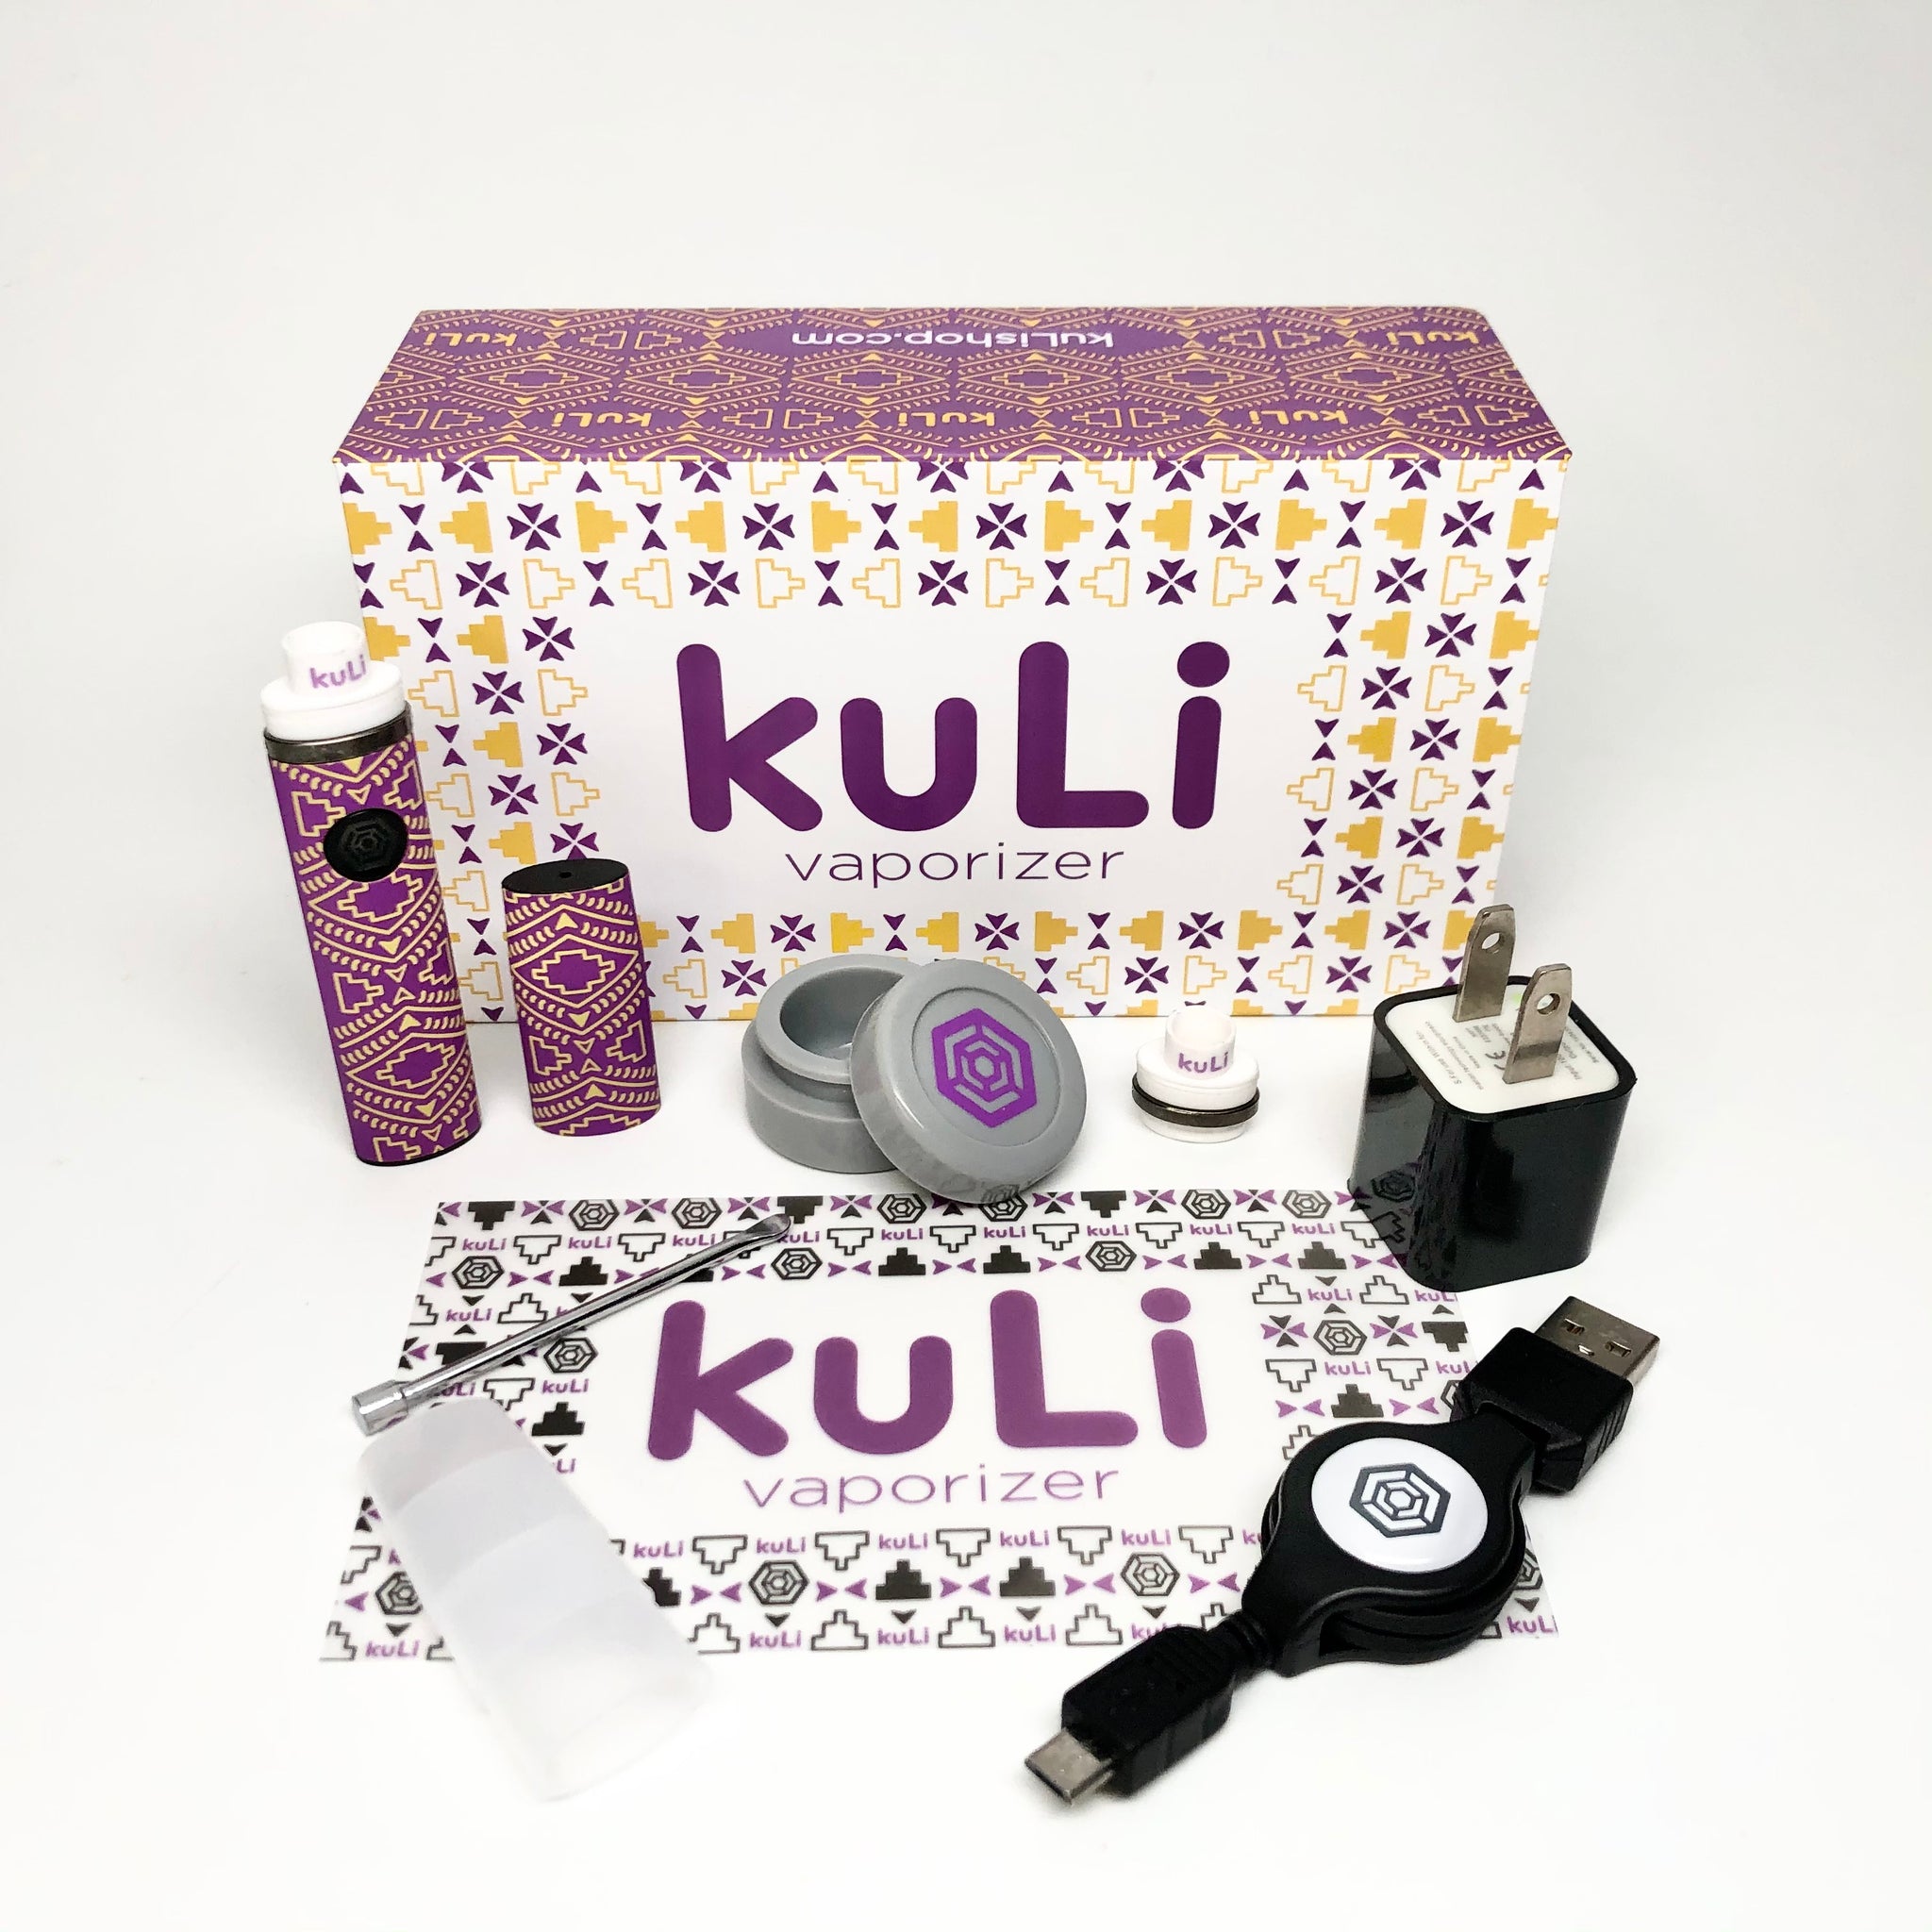 kuLi kit - purpLe and yellow